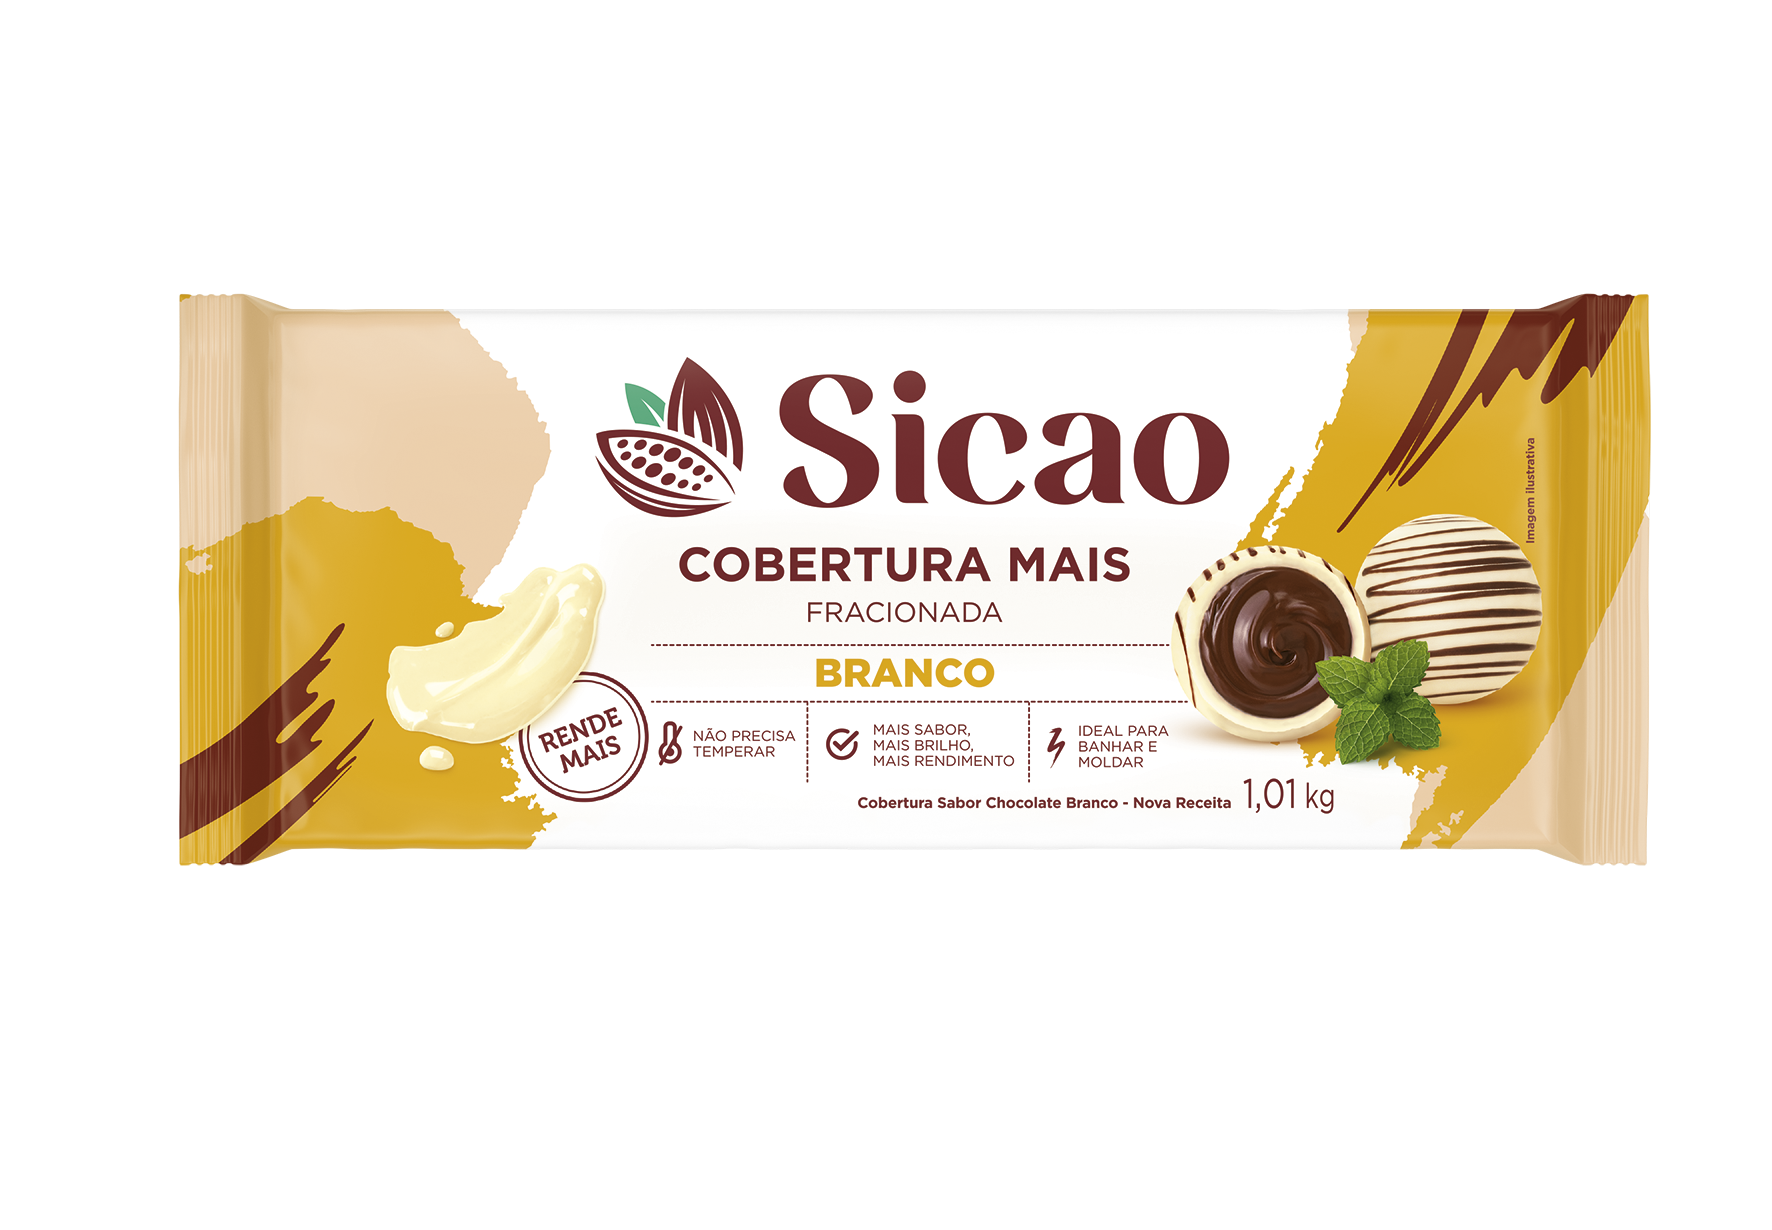 Cobertura Fracionada Sabor Chocolate Branco Sicao Mais - Barra 1,01 kg